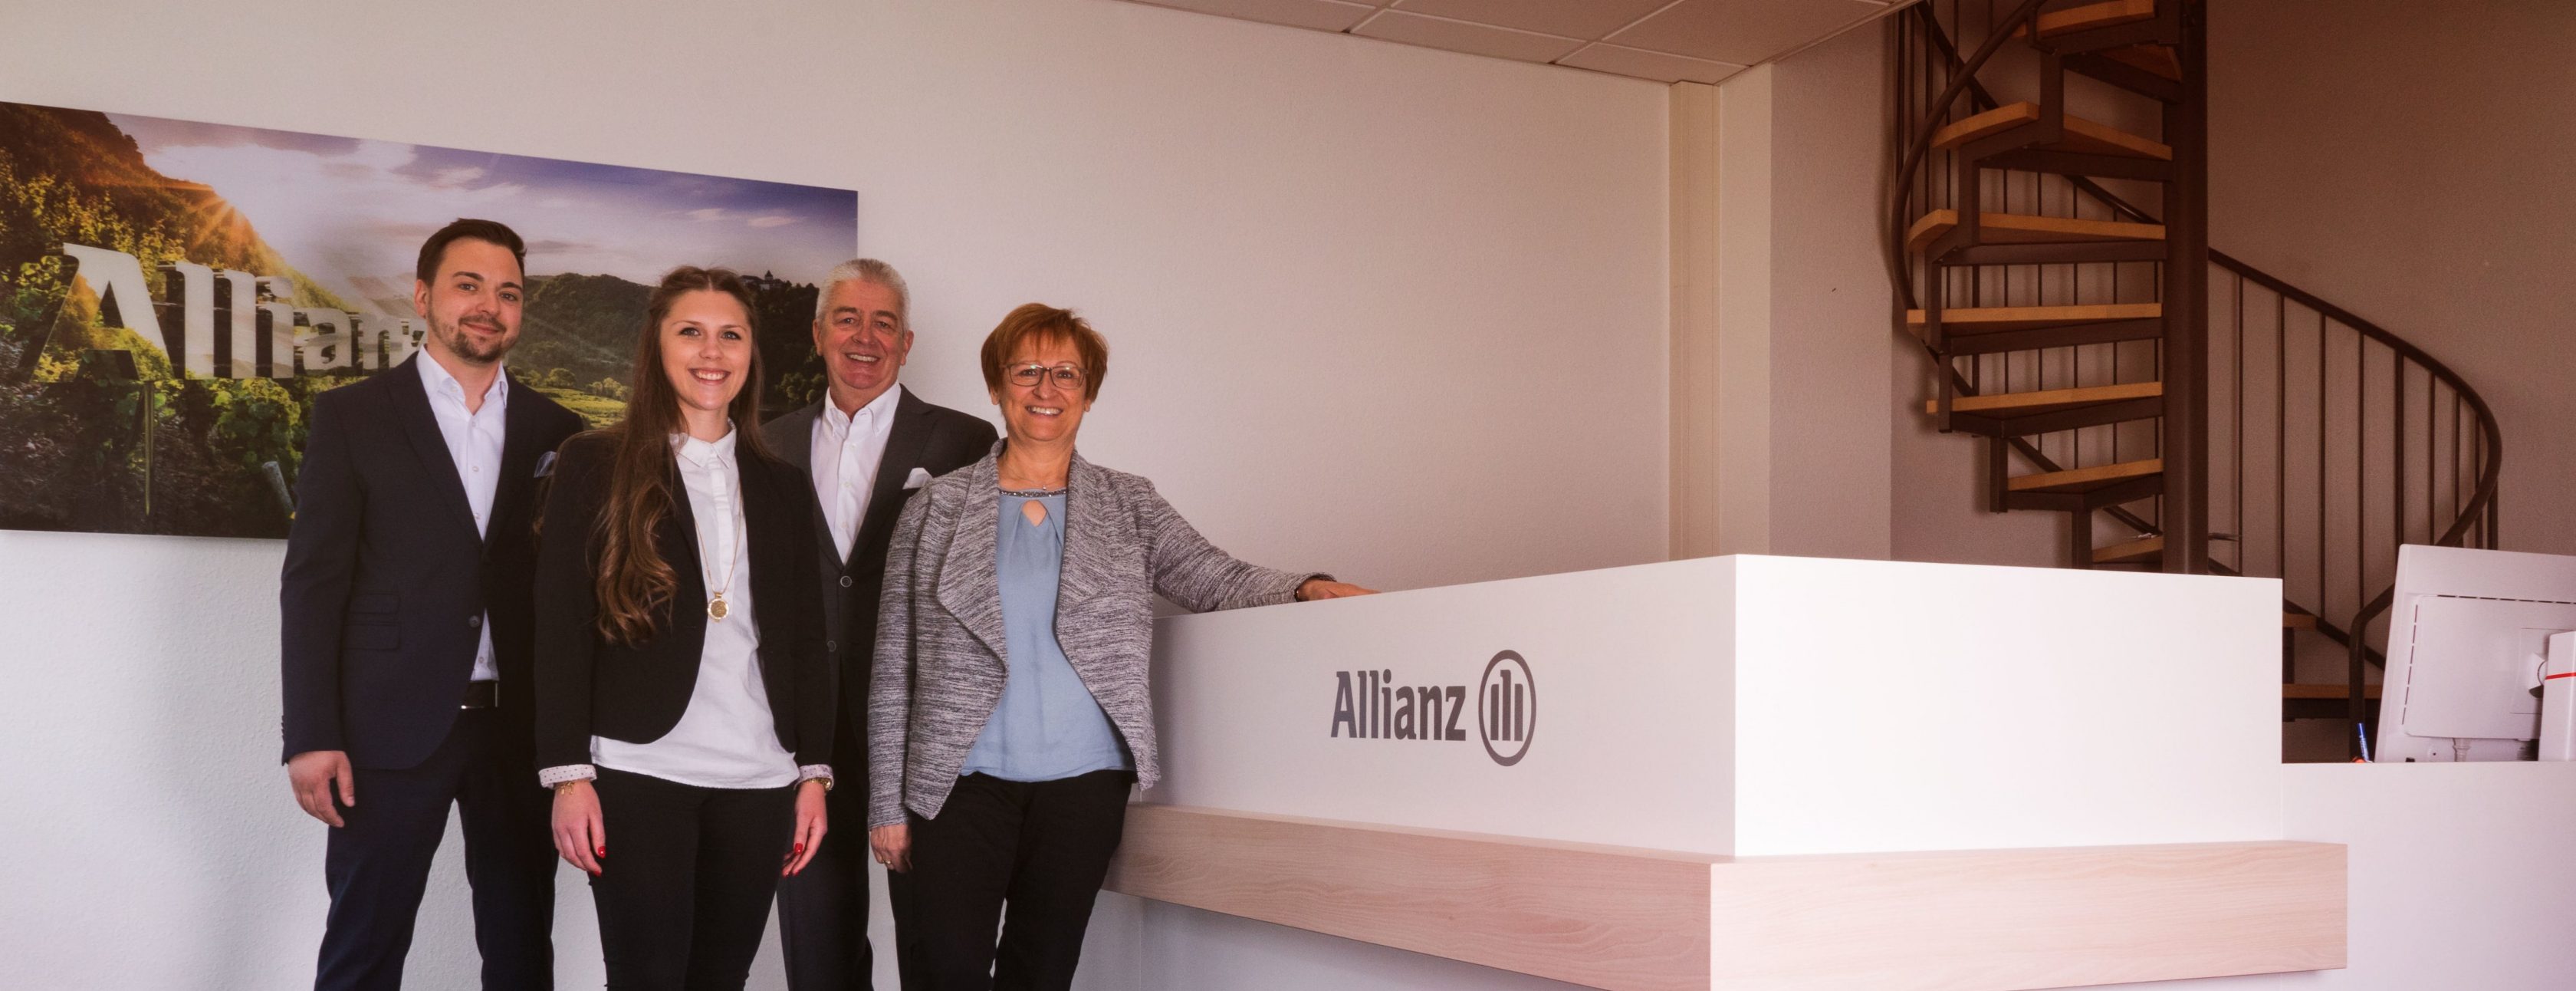 Allianz Versicherung Agentur Krebs Inh. Uwe Korn Aschaffenburg - Teamfoto